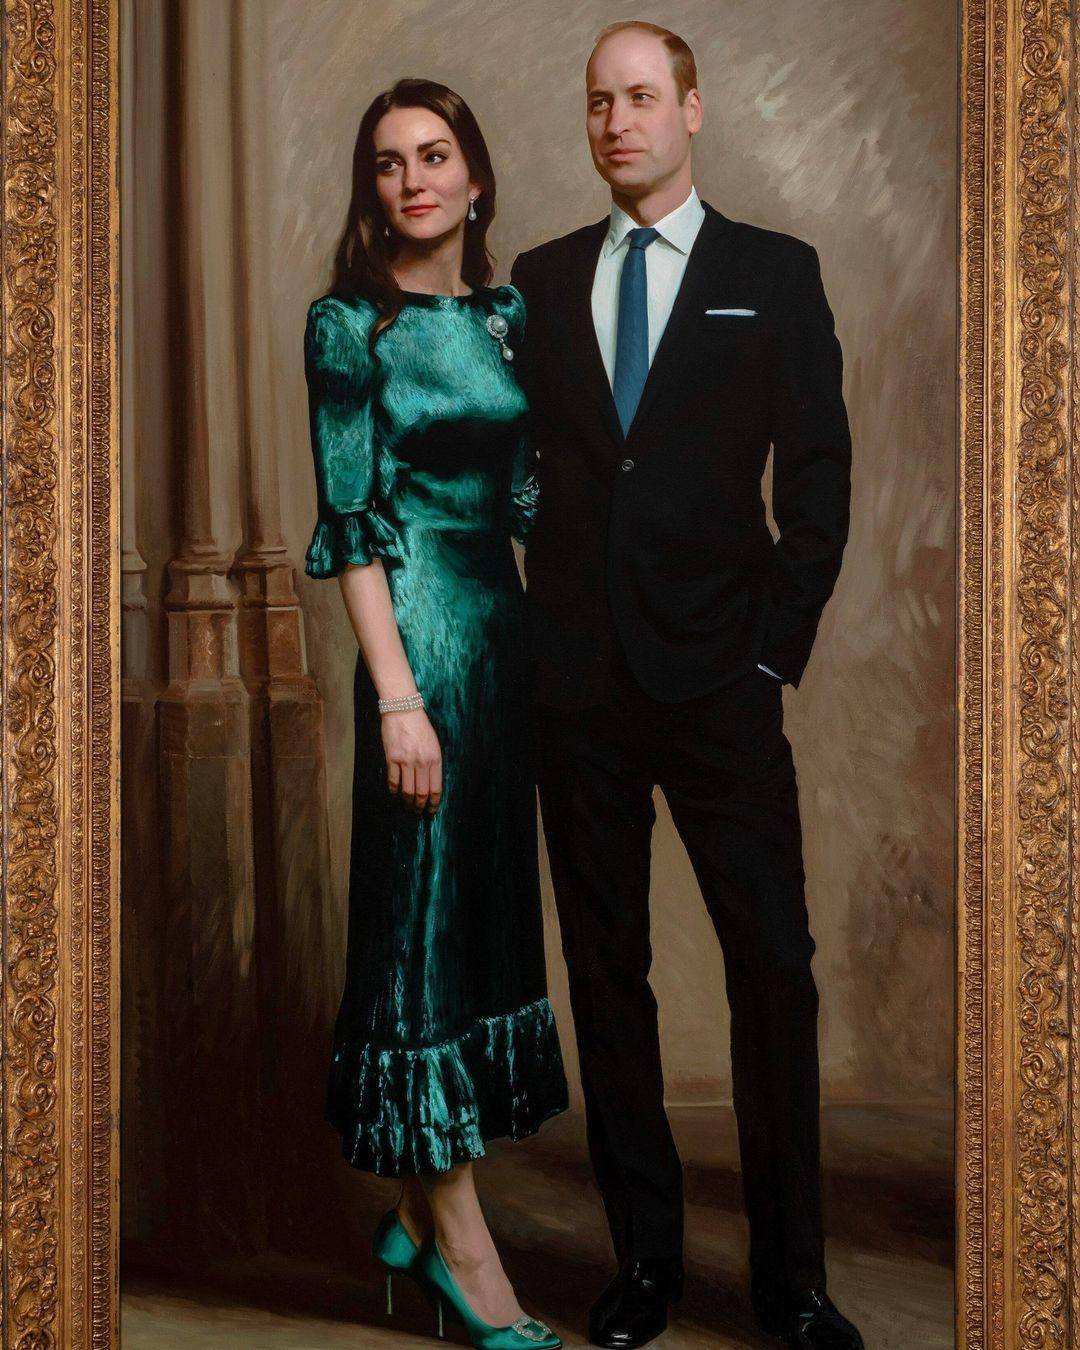 Presentan primer retrato oficial del príncipe William y Kate Middleton